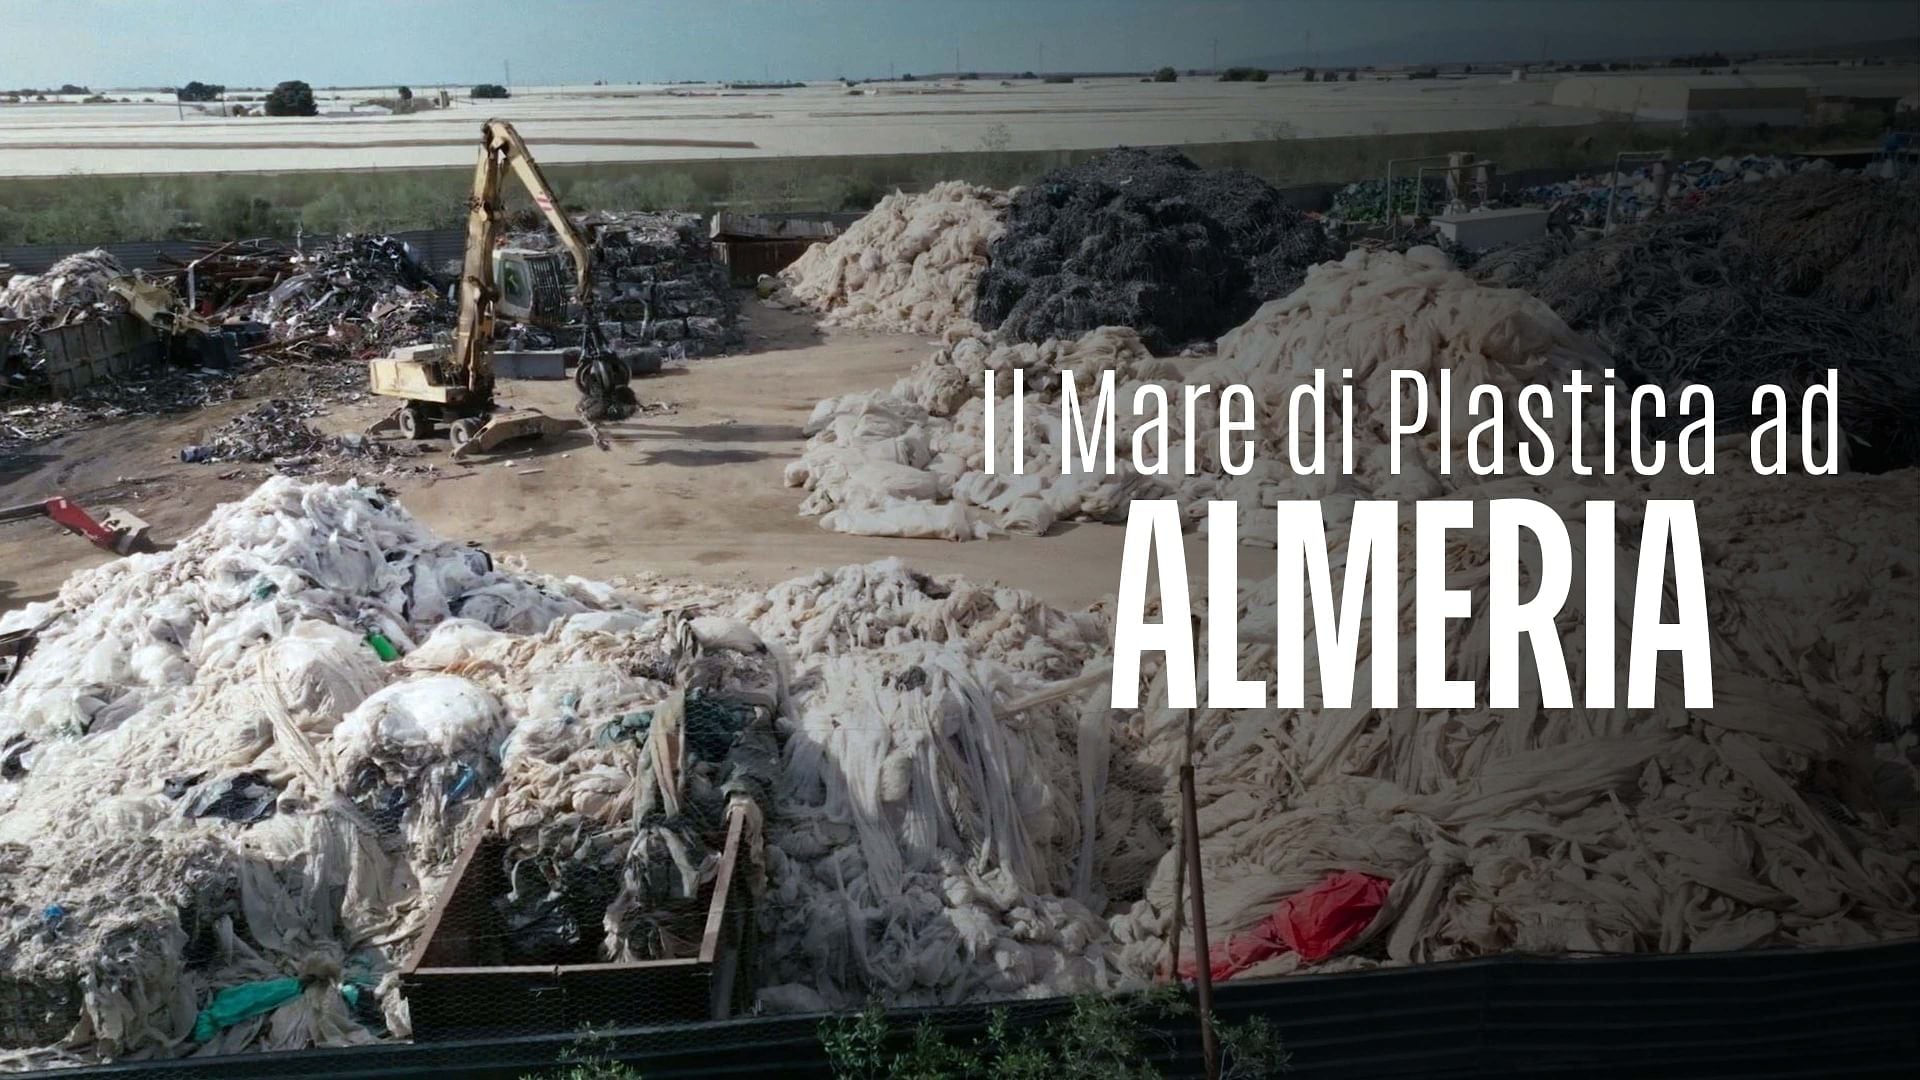 Re: sguardi sulla società - Spagna: ad Almeria, un mare di plastica